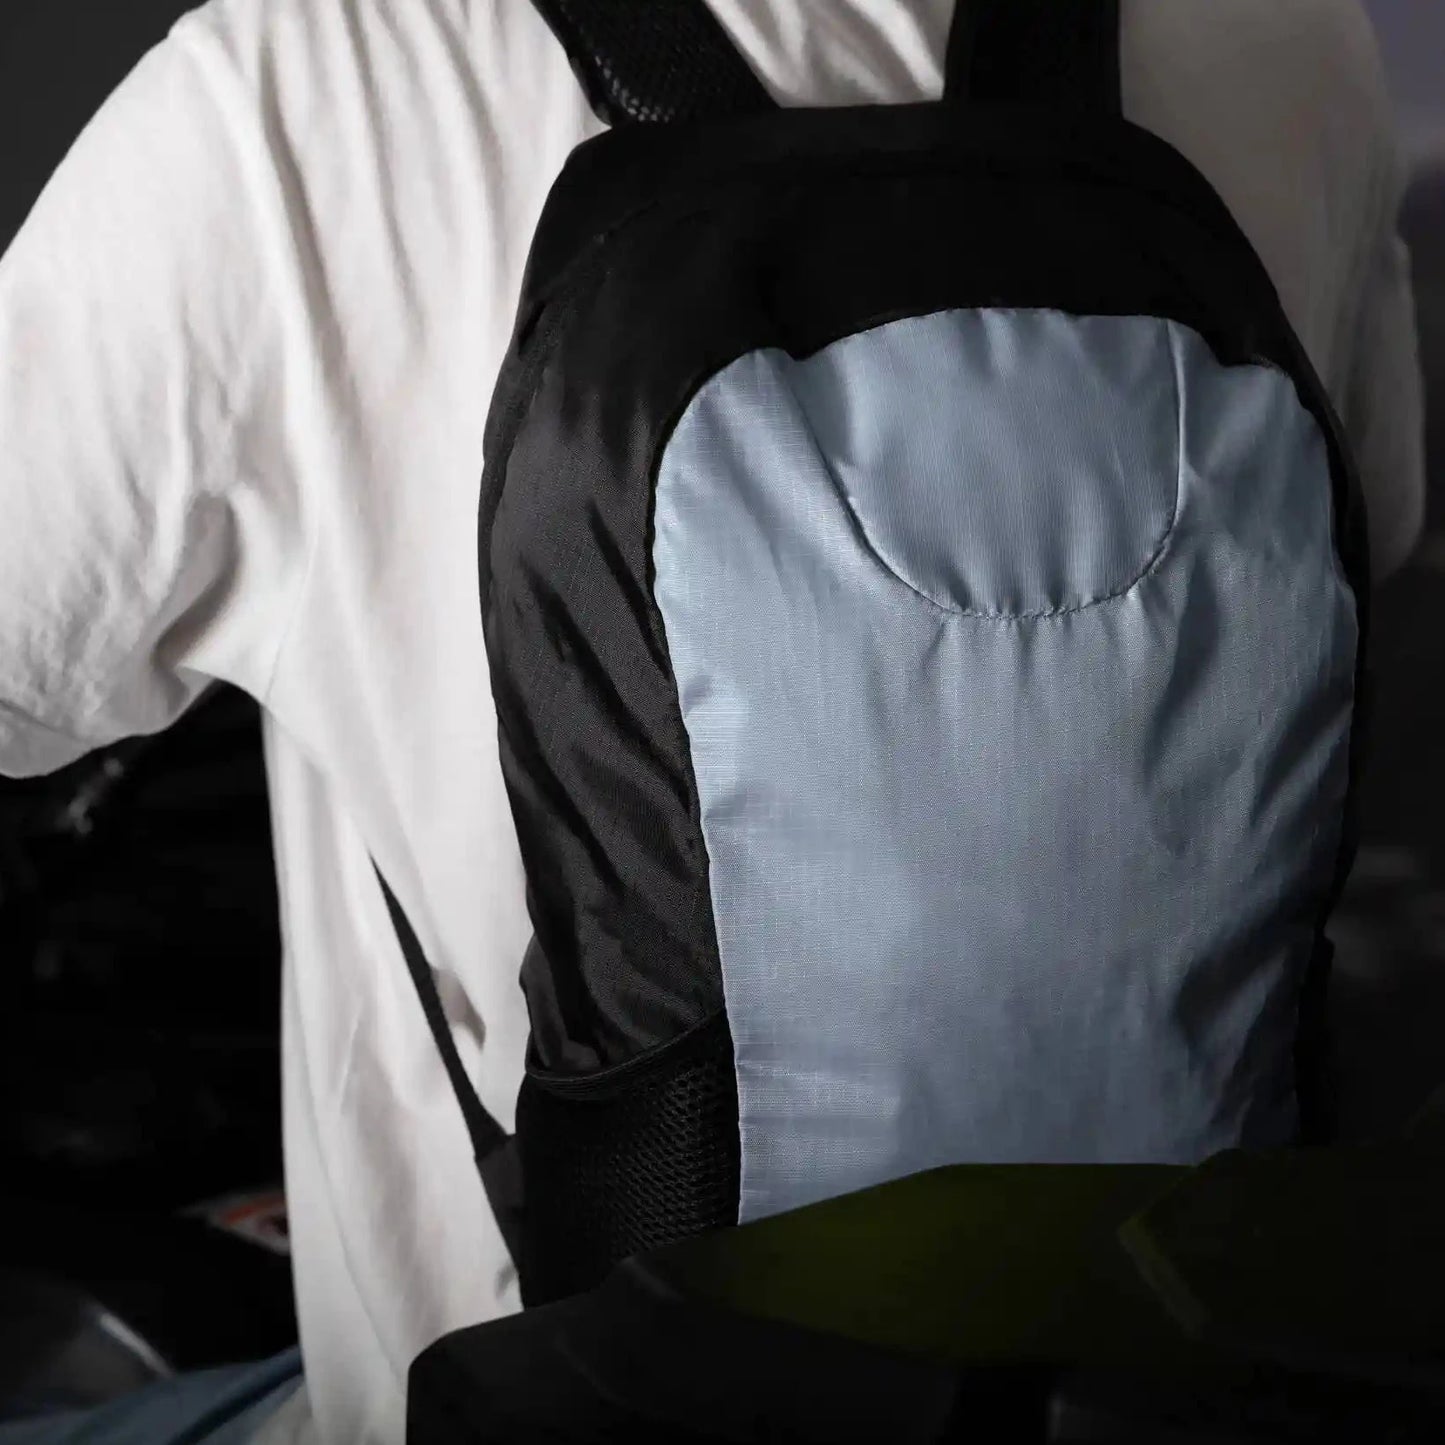 En mann med ryggsekken i grå og svart farge på ryggen